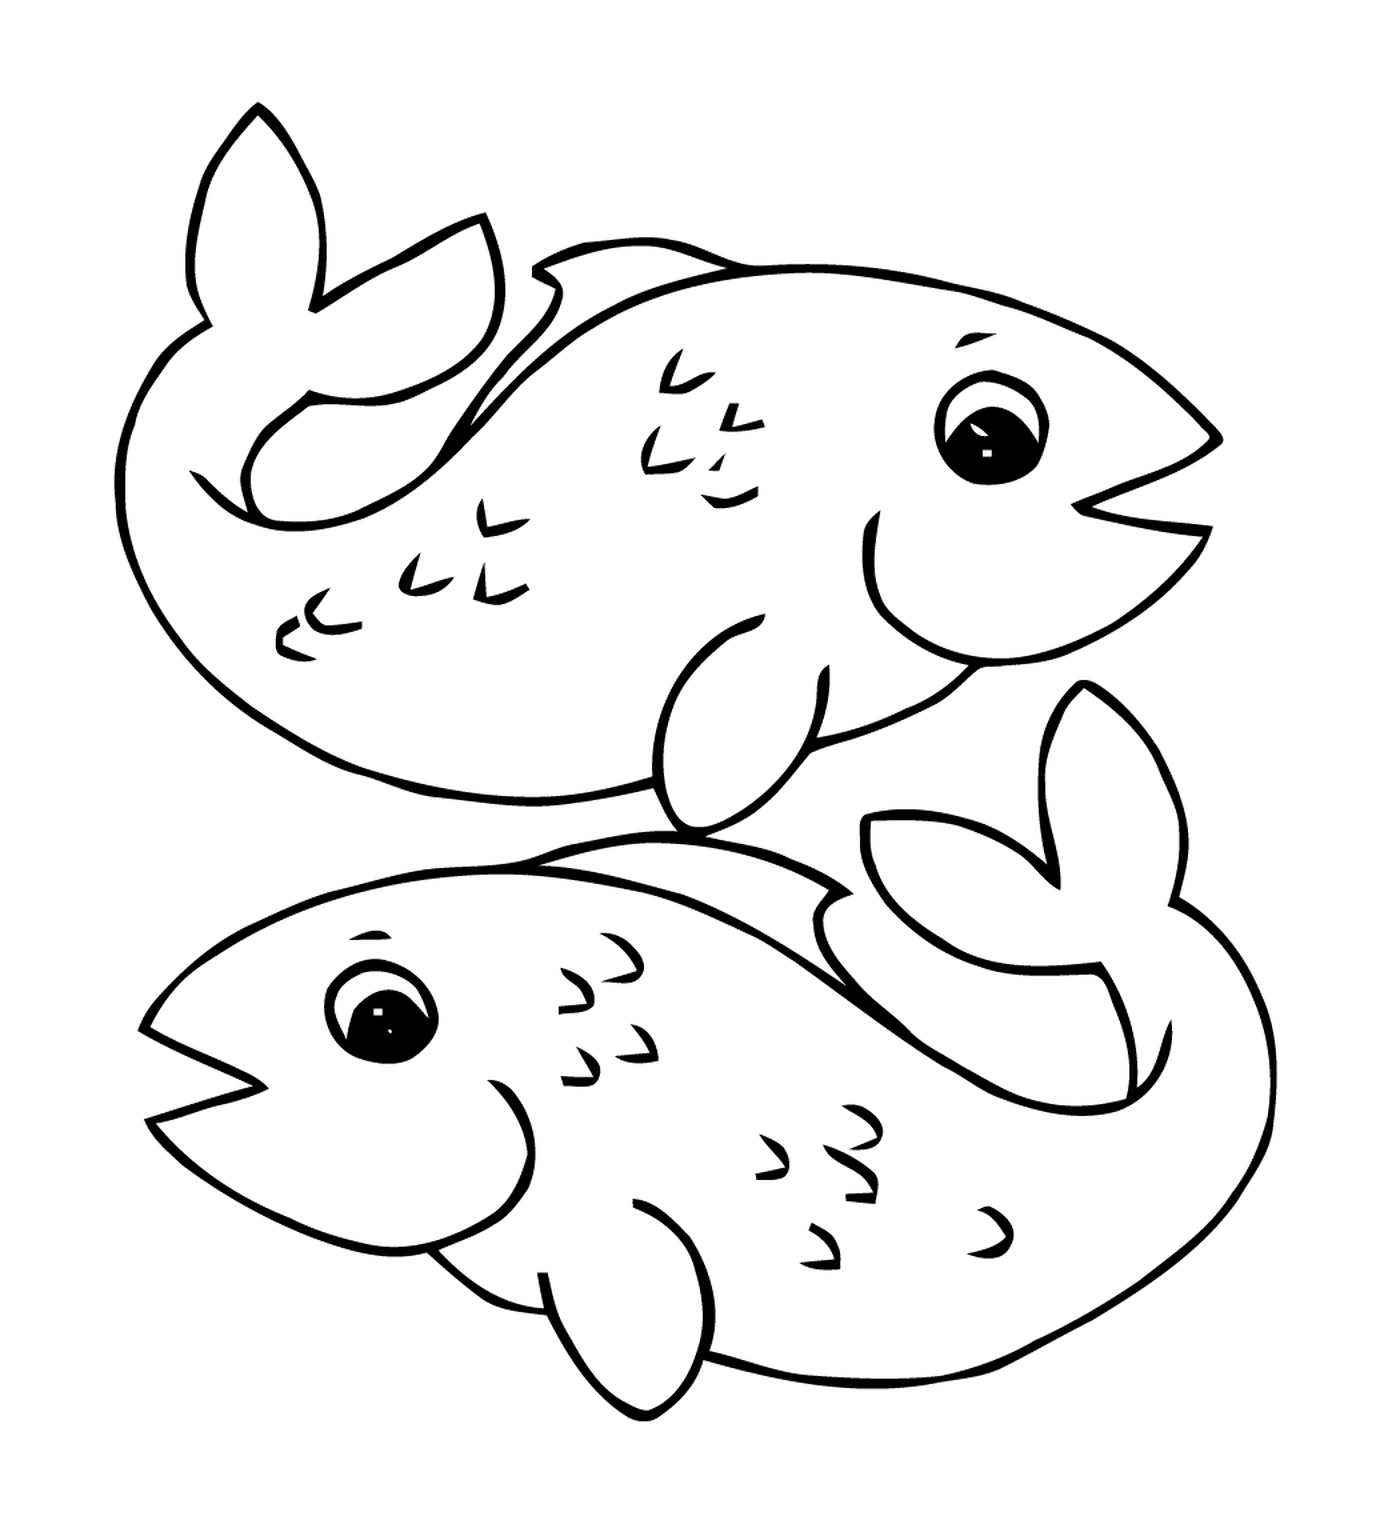  an April fish 